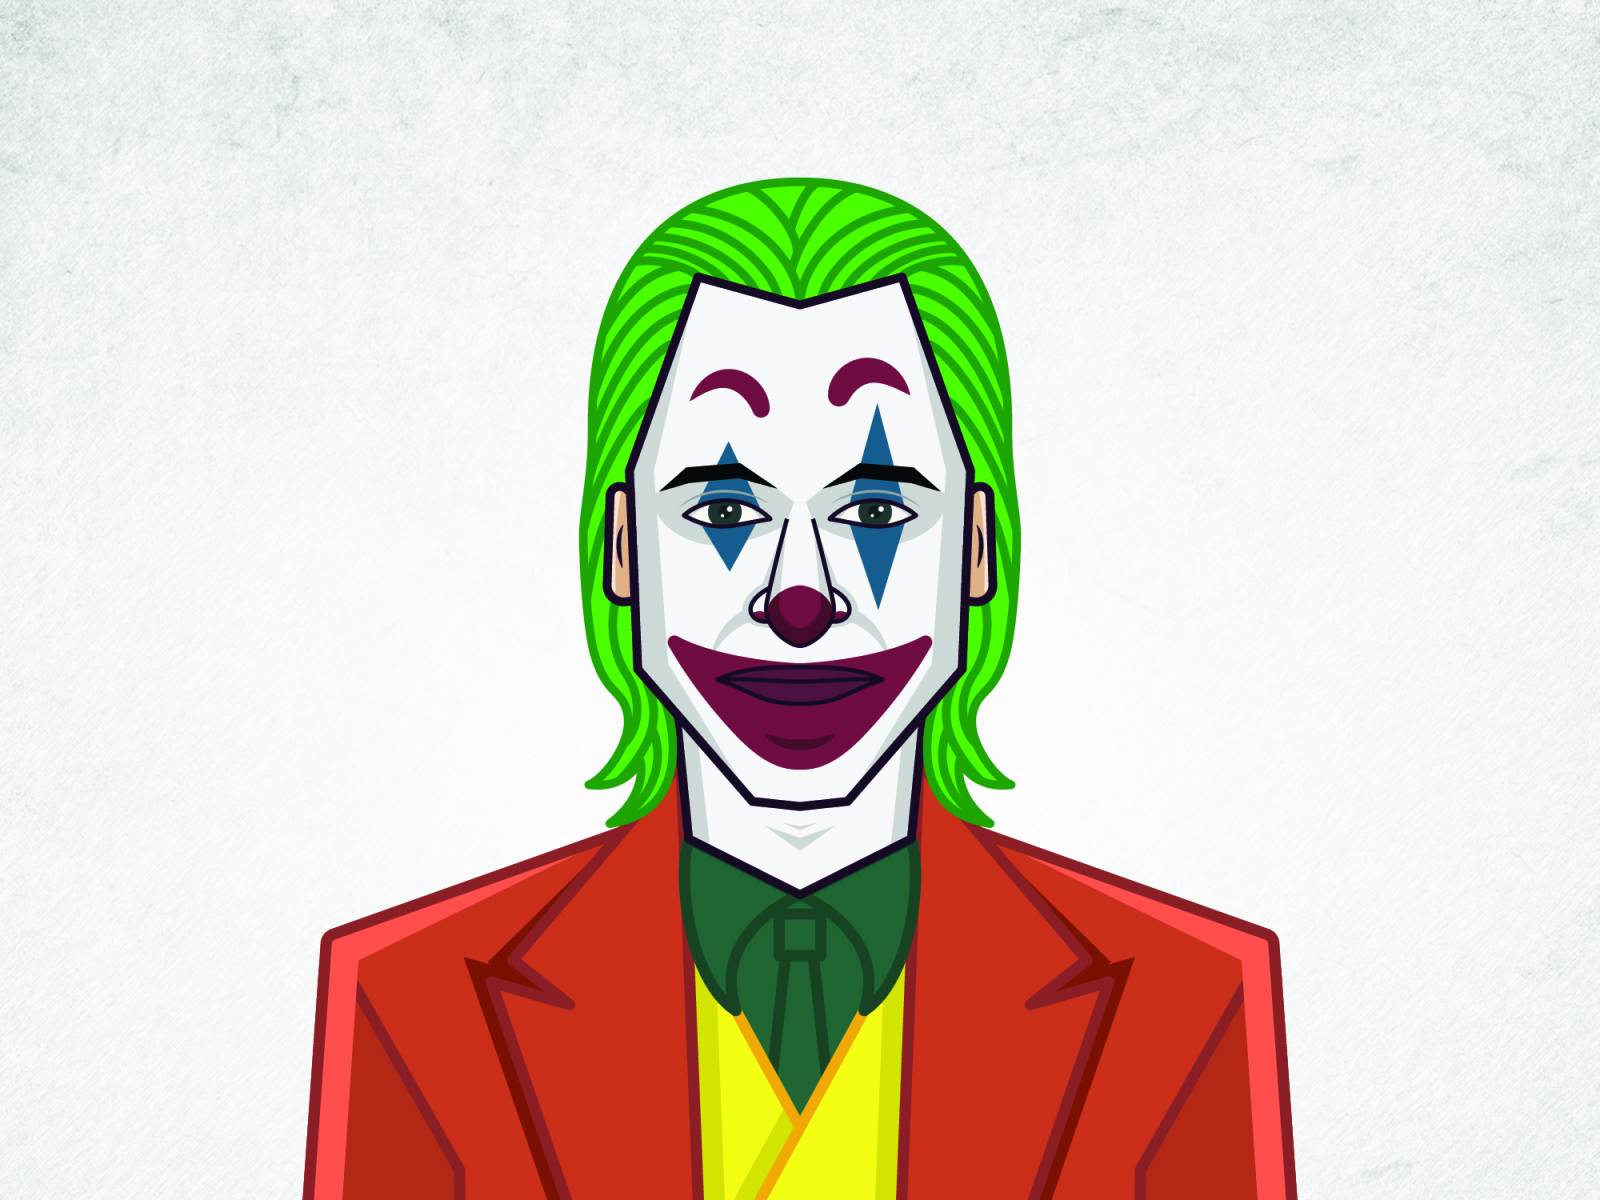 Joker Caricature by Yuvraj Bokhre on Dribbble